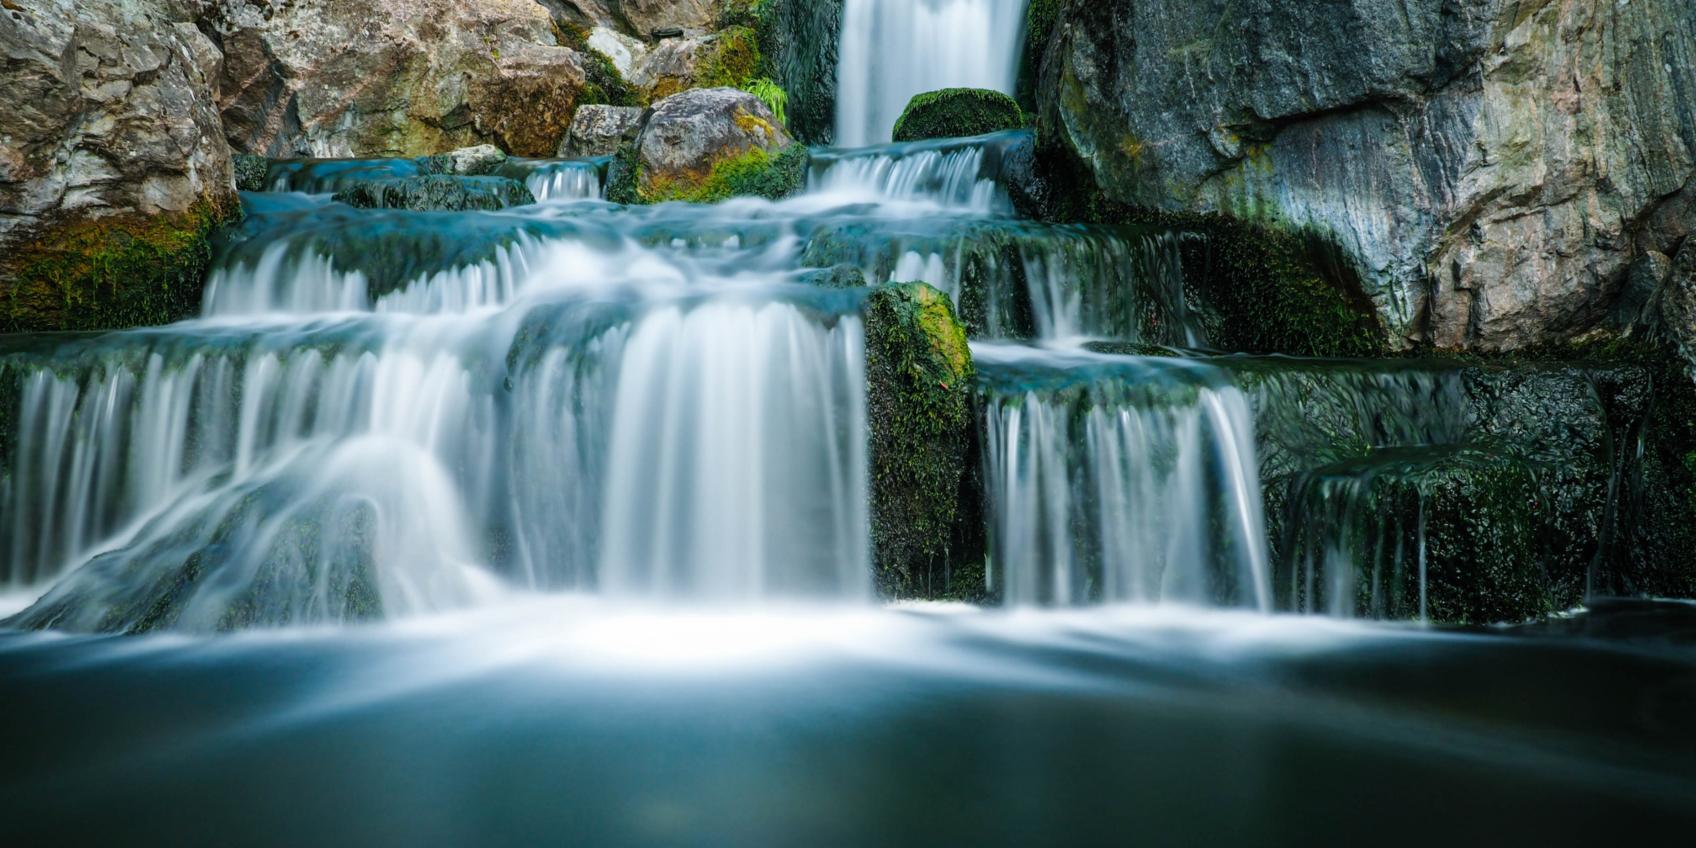 Wasserfall (c) Bild von Gerhard Bögner auf Pixabay